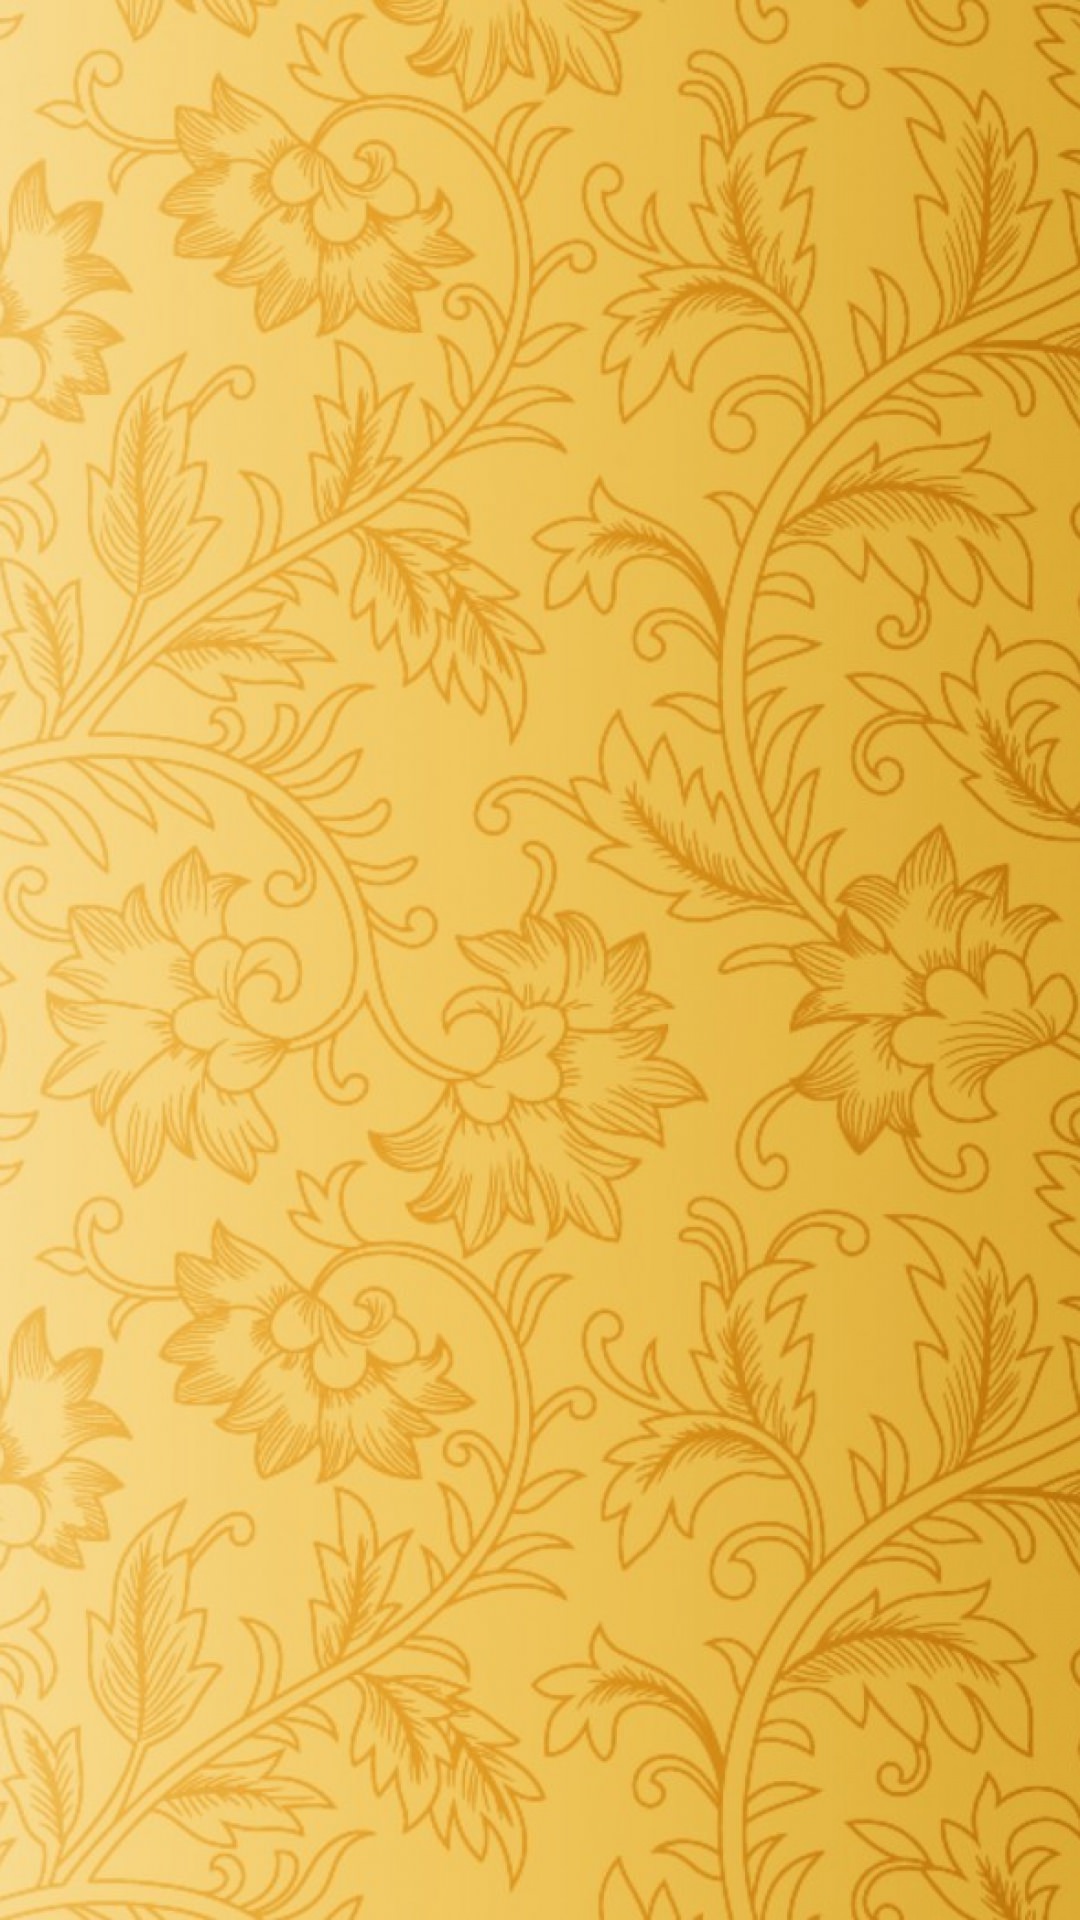 골드 배경 벽지,무늬,주황색,벽지,노랑,꽃 무늬 디자인